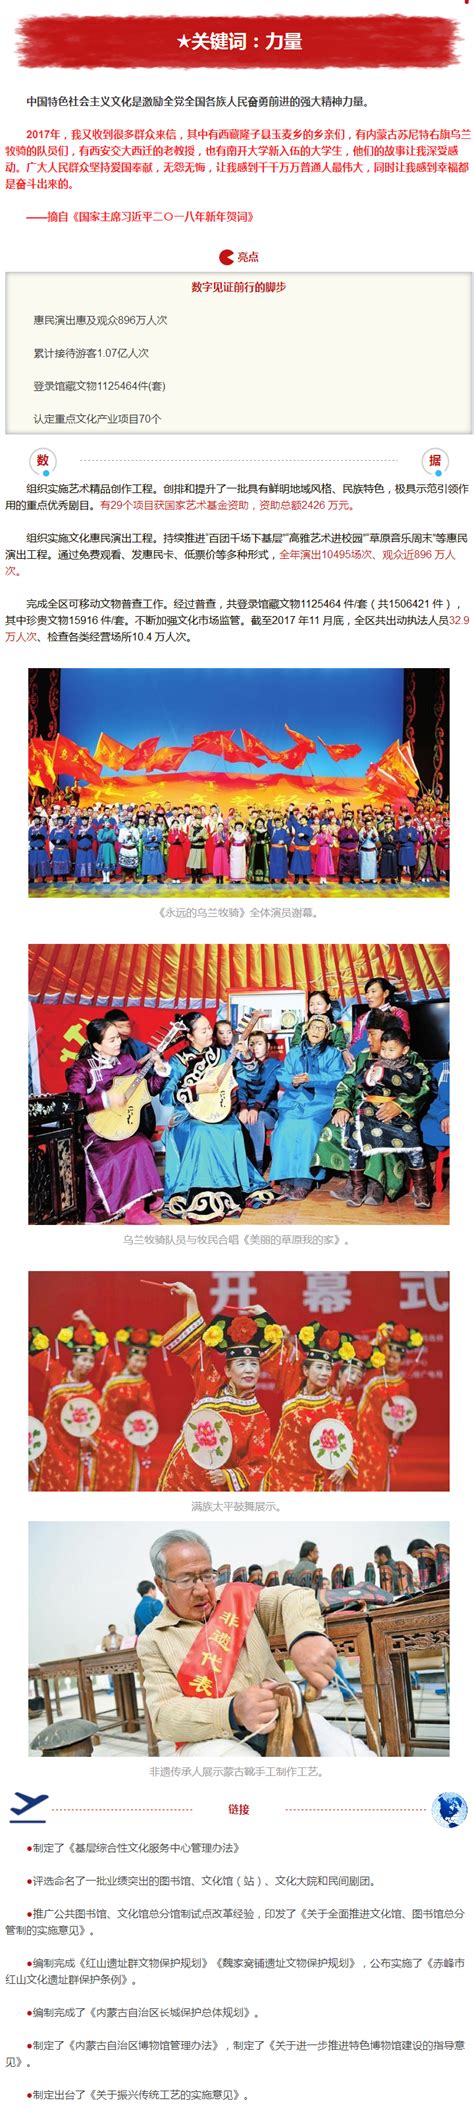 年度盘点|8个关键词读懂内蒙古2017-新闻中心-内蒙古新闻网